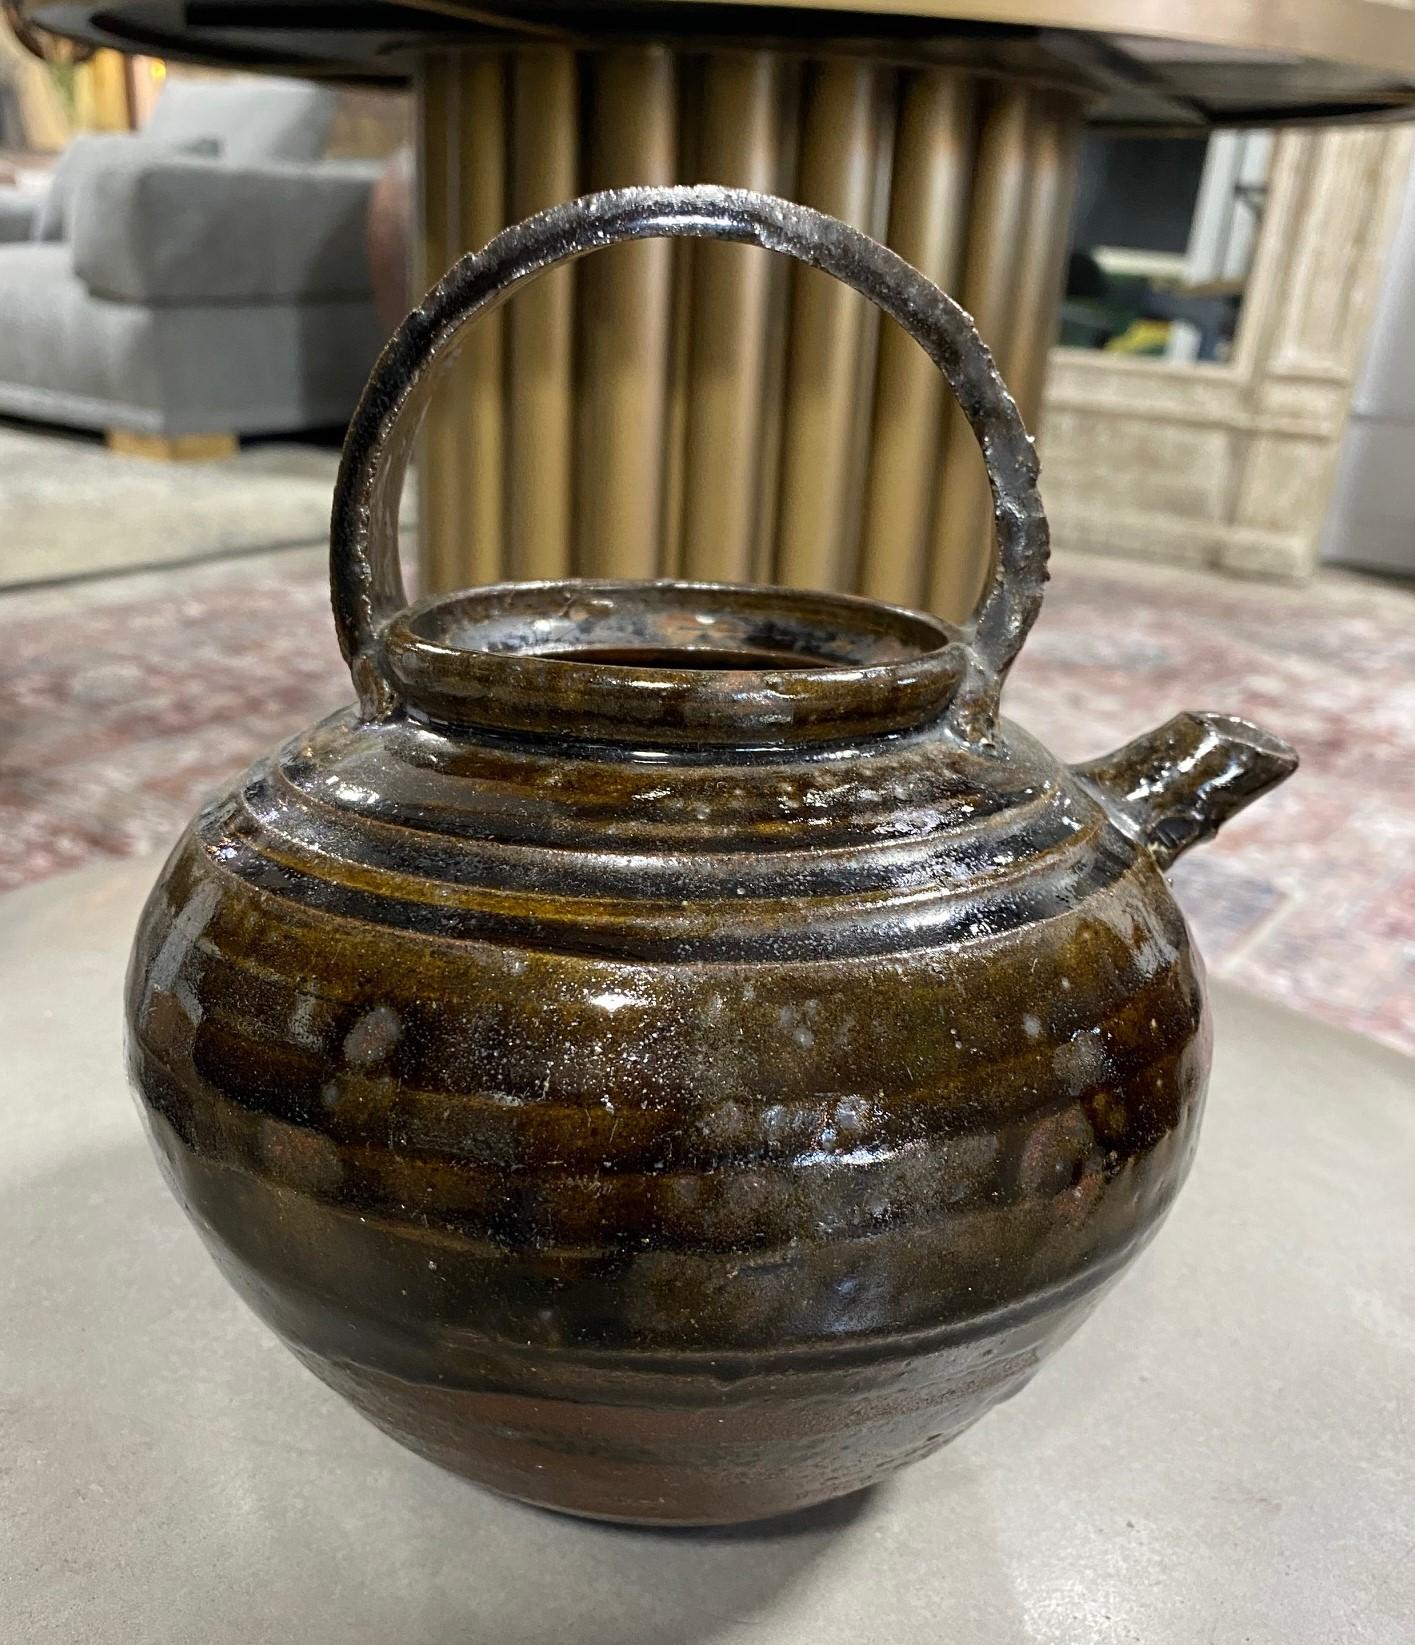 Korean, Joseon Dynasty Brown Green Glazed Stoneware Pottery Ceramic Teapot For Sale 2